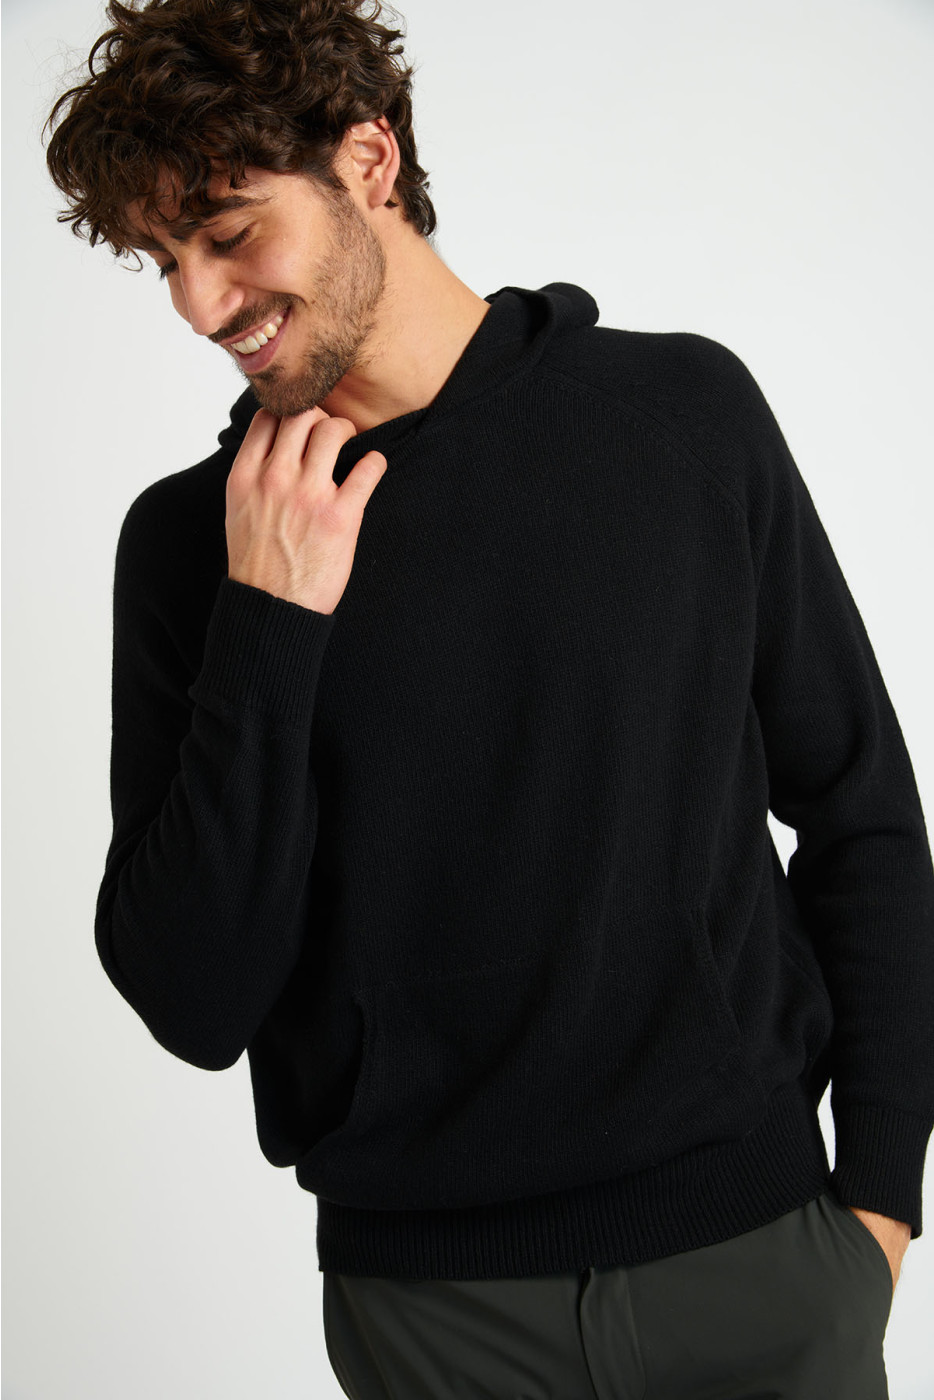 Sweatshirt pull noir à capuche MILOS MORIANI